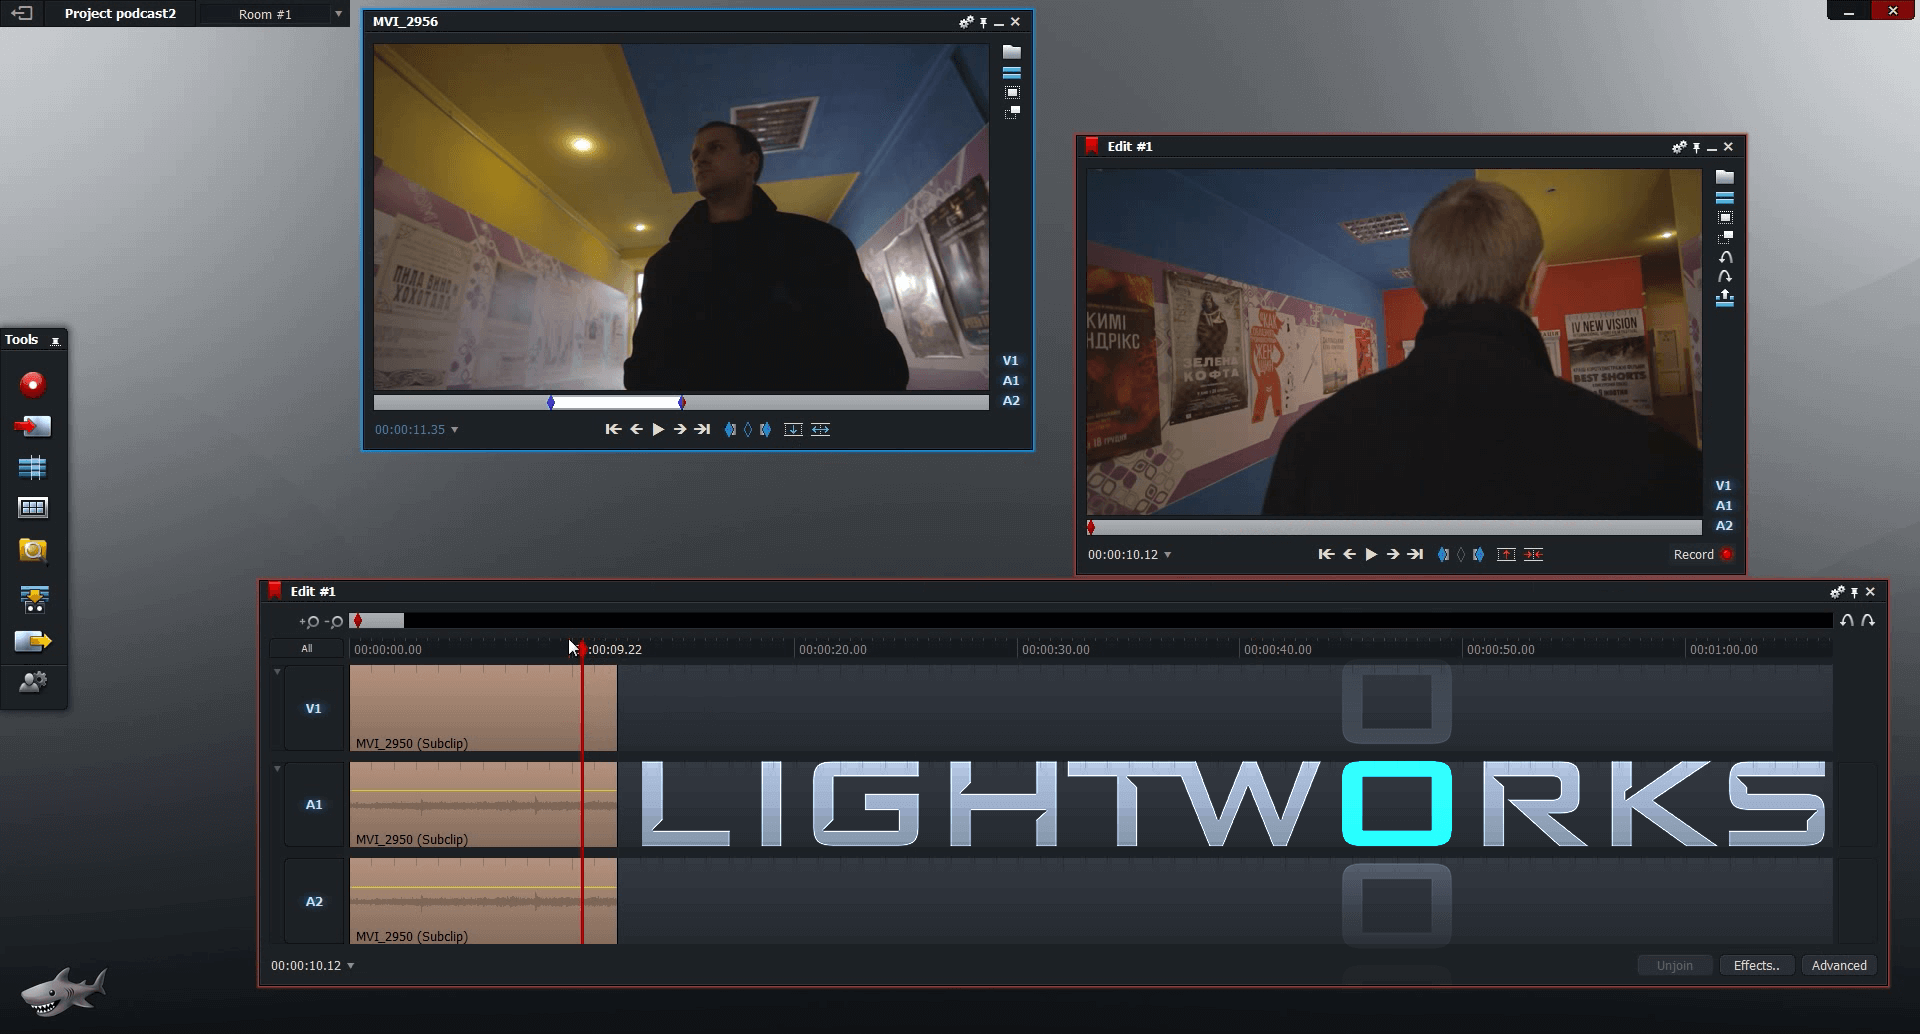 lightworks v12 tutorial review r - кинофестиваль